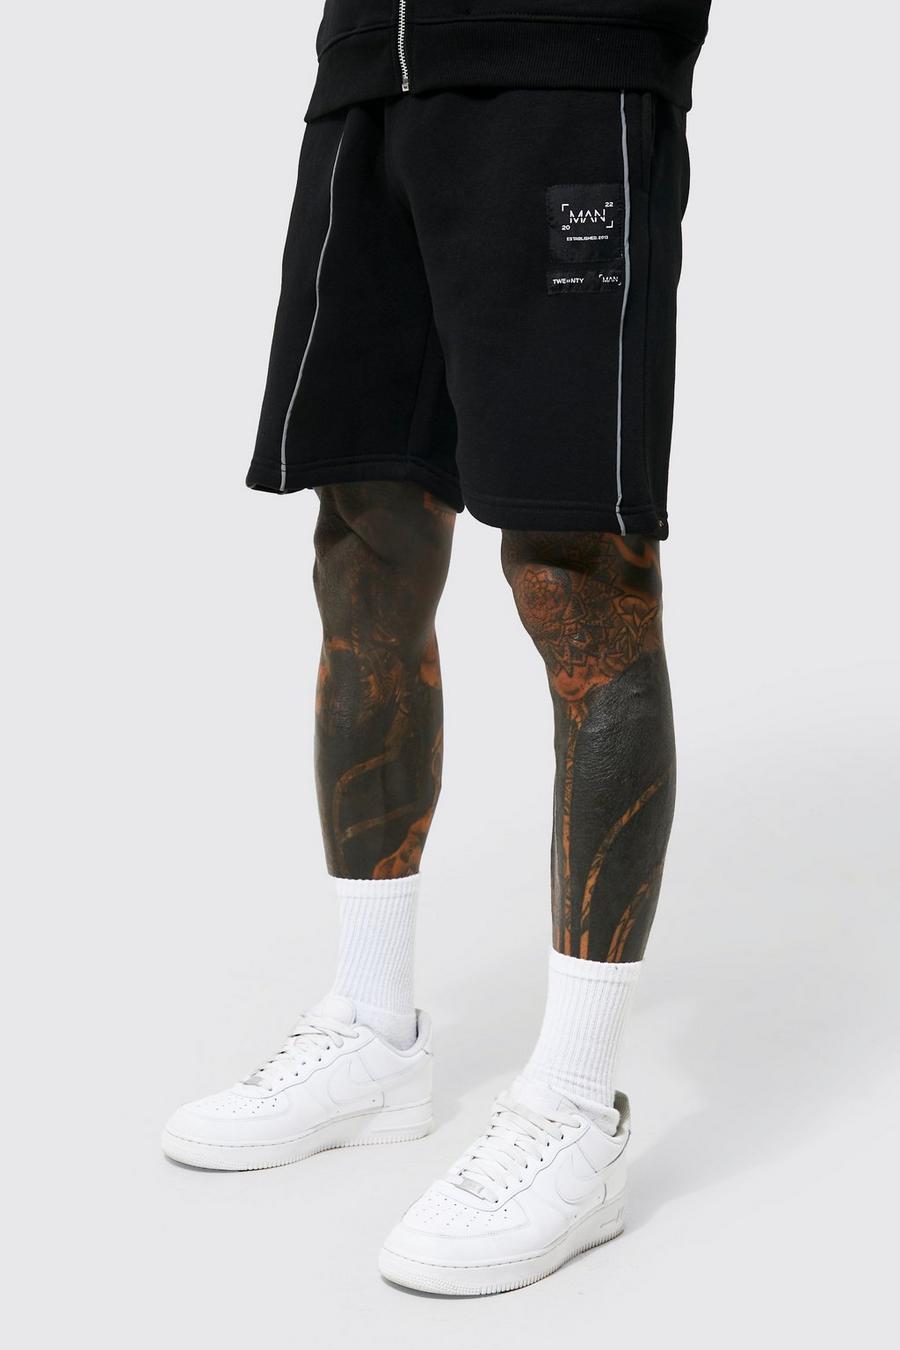 Lockere mittellange Jersey-Shorts mit Paspeln, Black schwarz